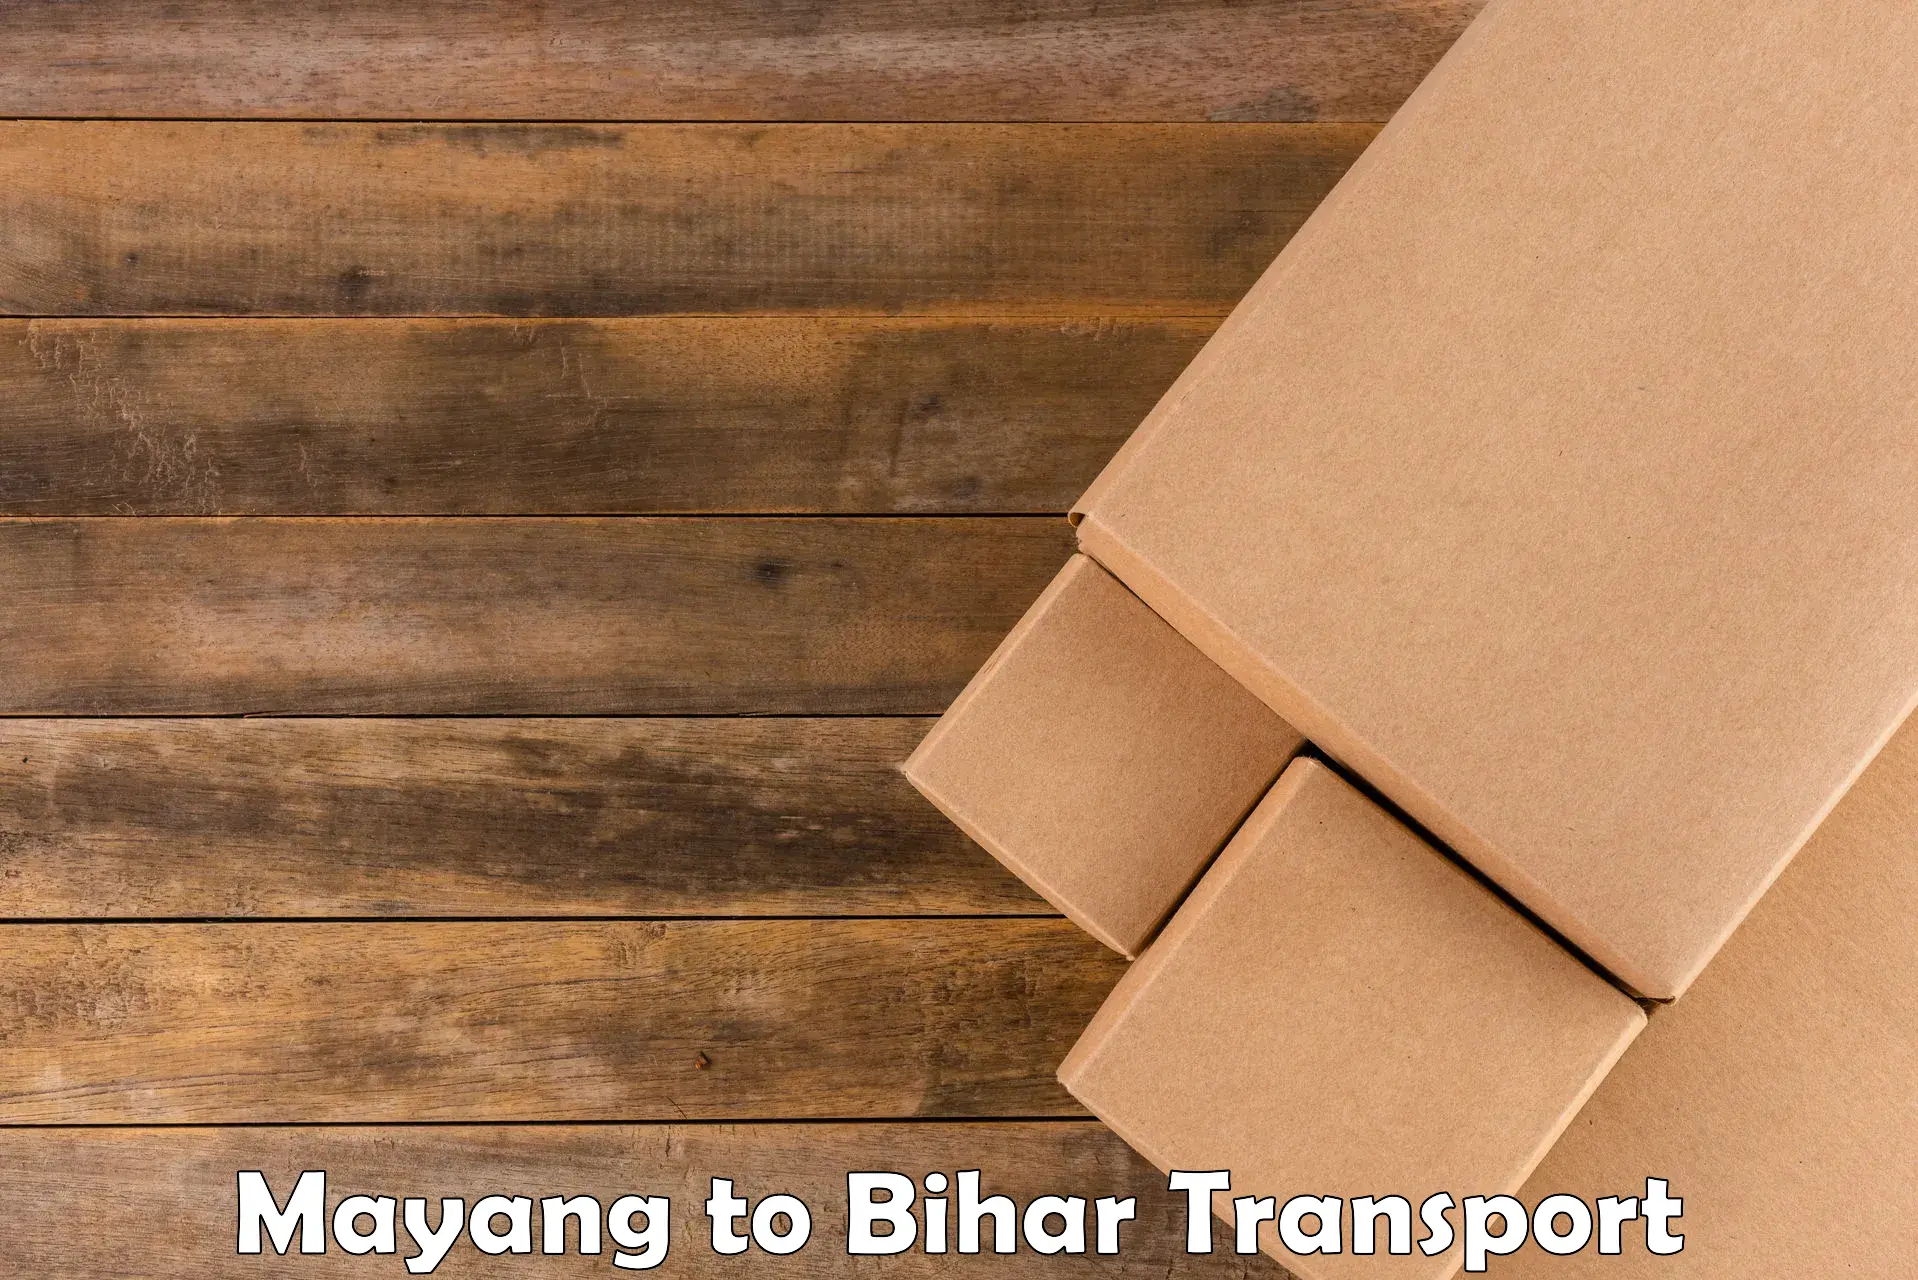 Cycle transportation service Mayang to Bihar